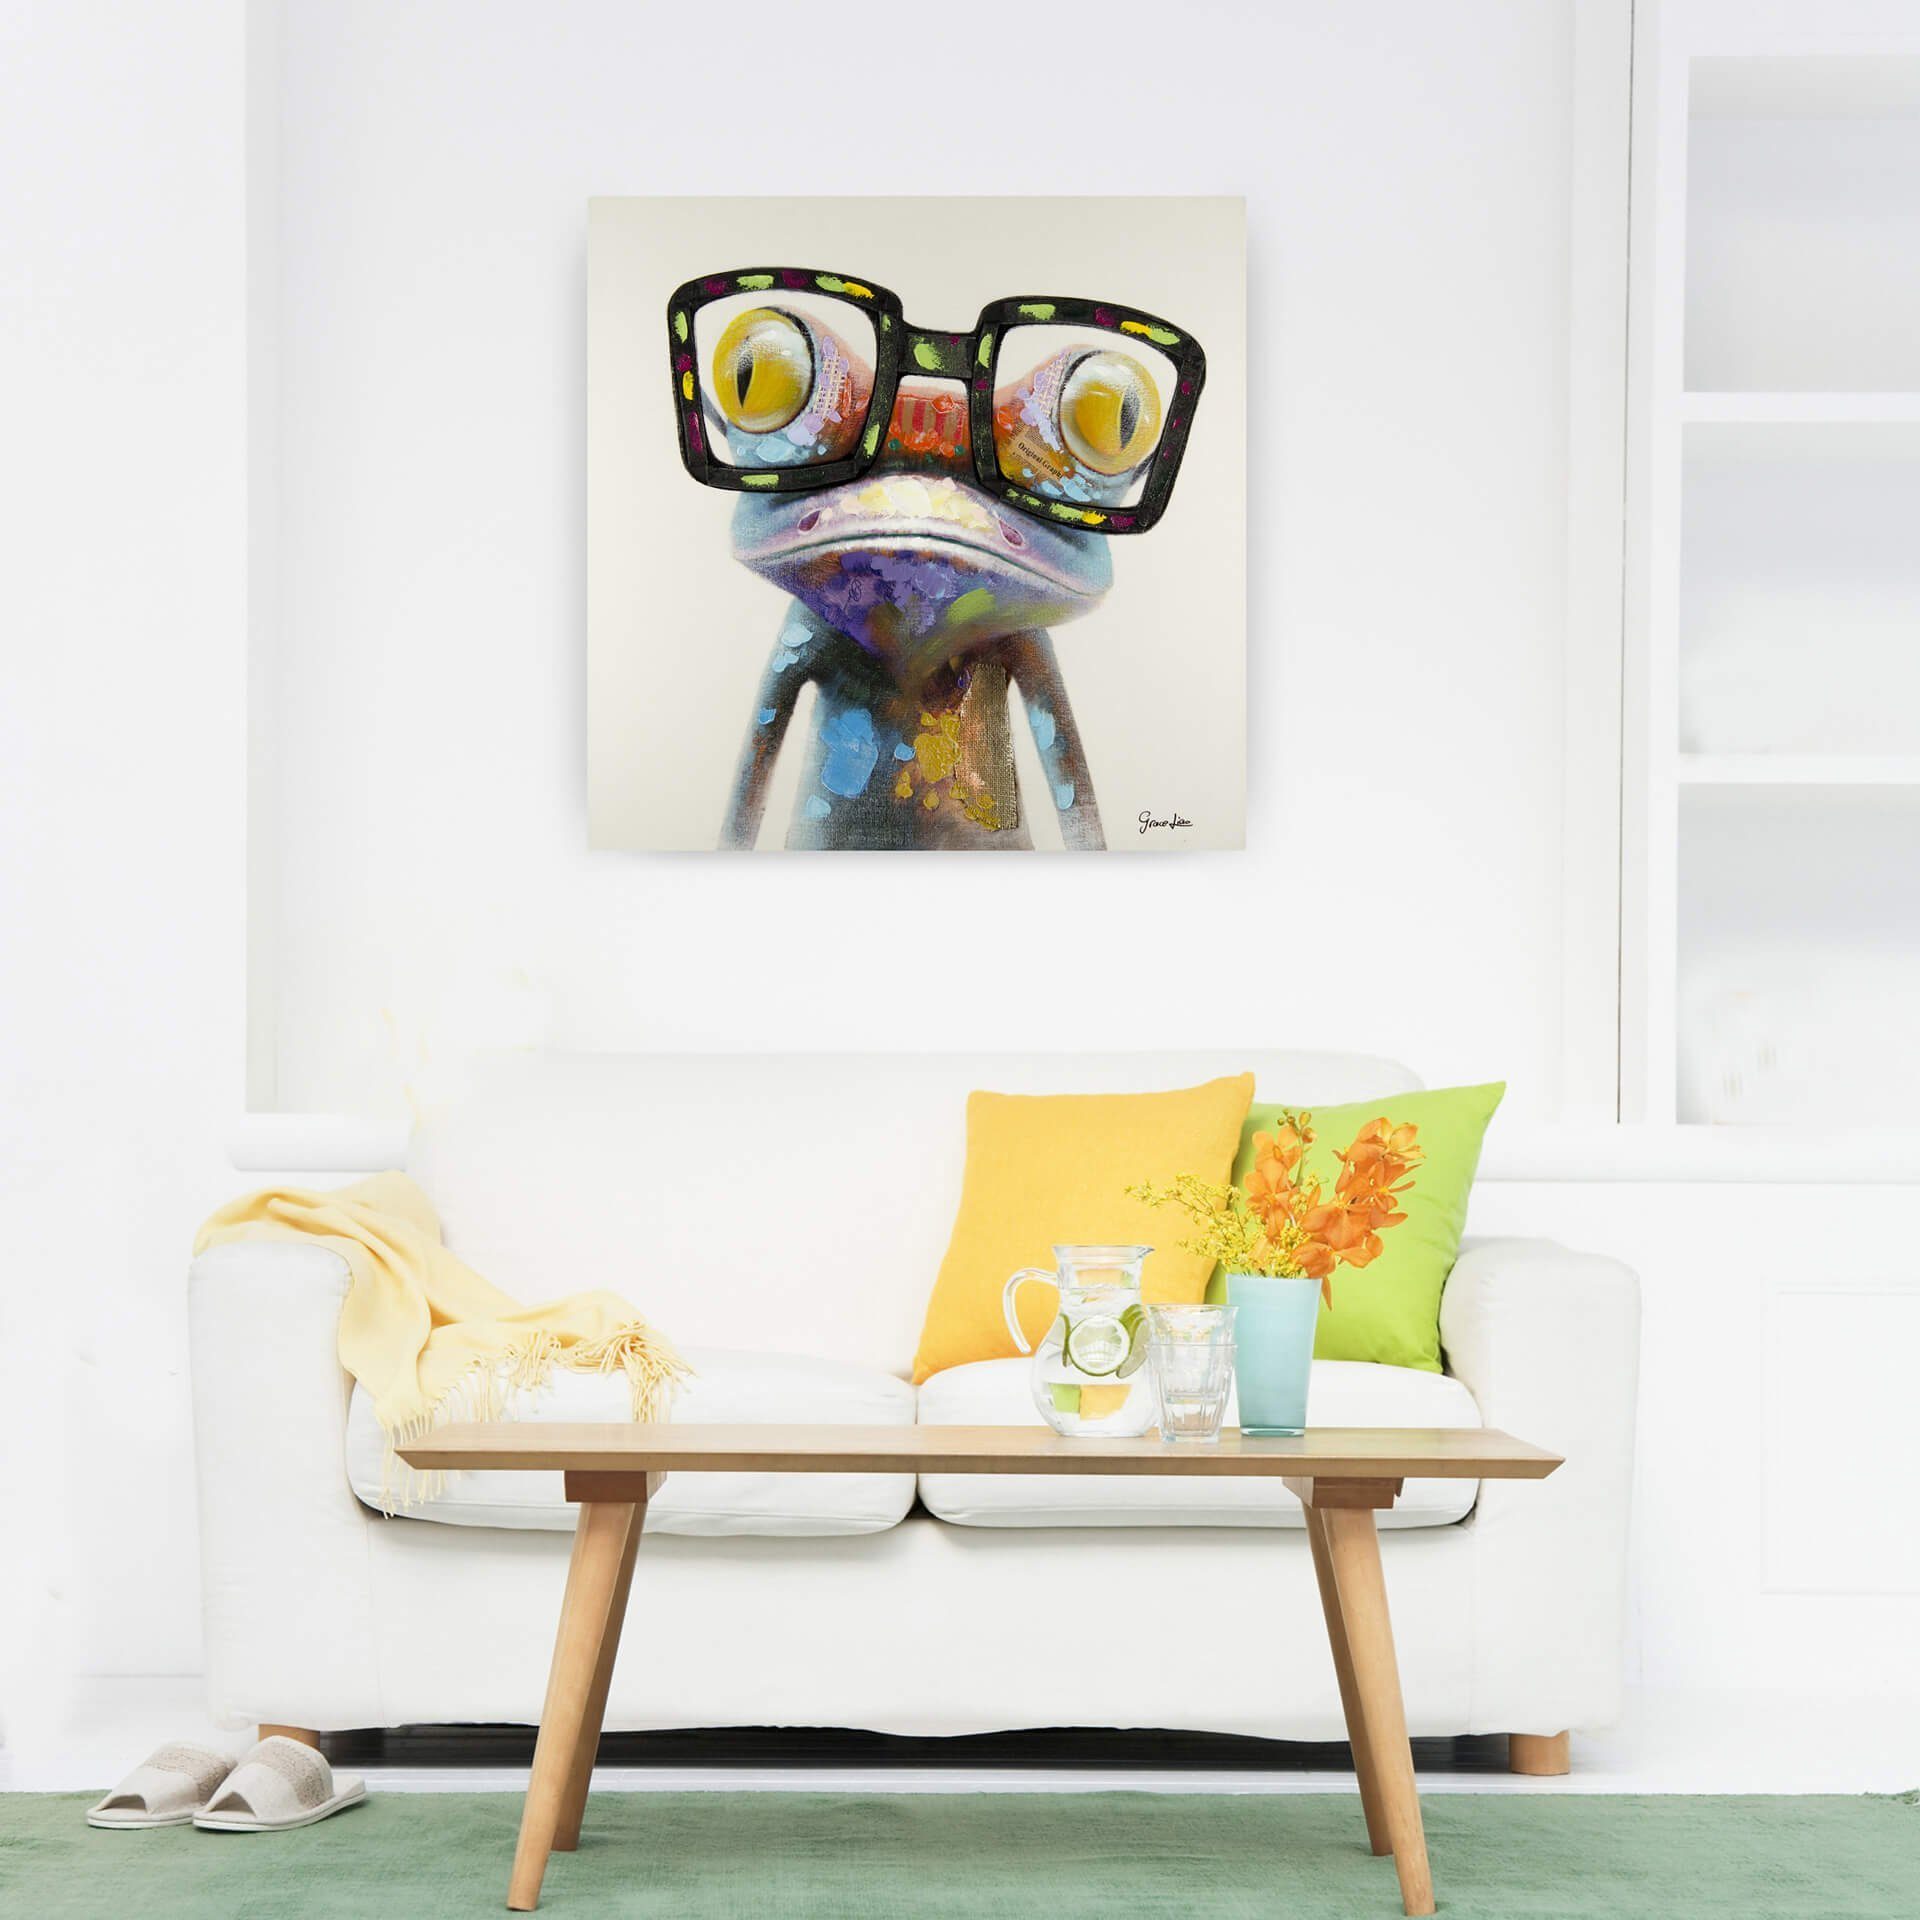 HANDGEMALT Wohnzimmer KUNSTLOFT Sei kein Frosch Wandbild Gemälde 80x80 Leinwandbild cm, 100%